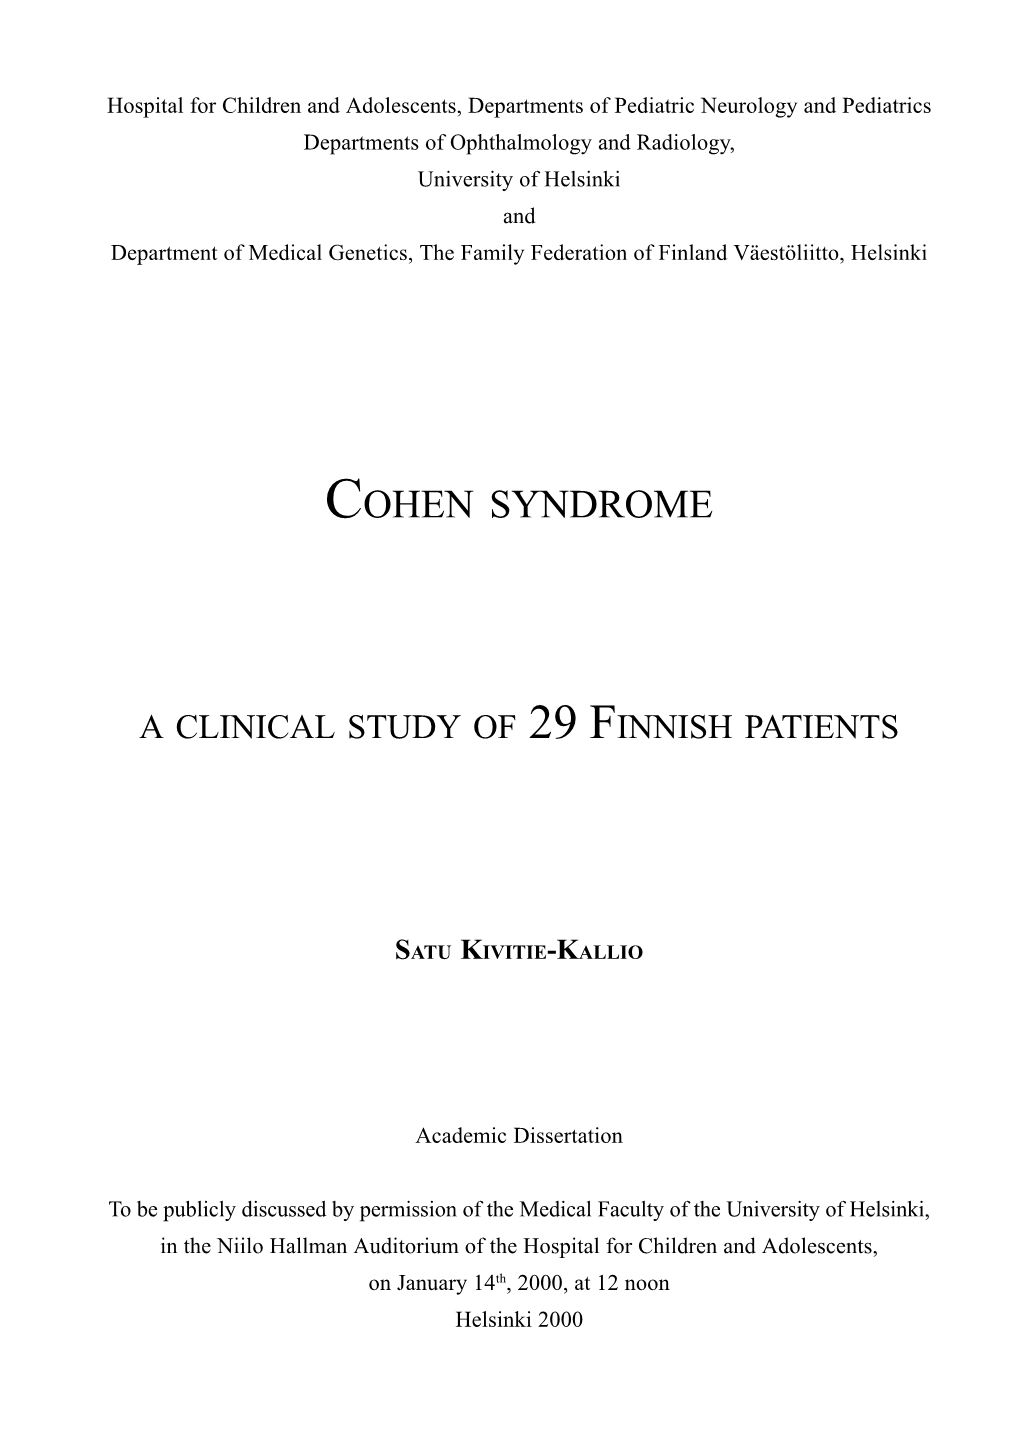 Cohen Syndrome